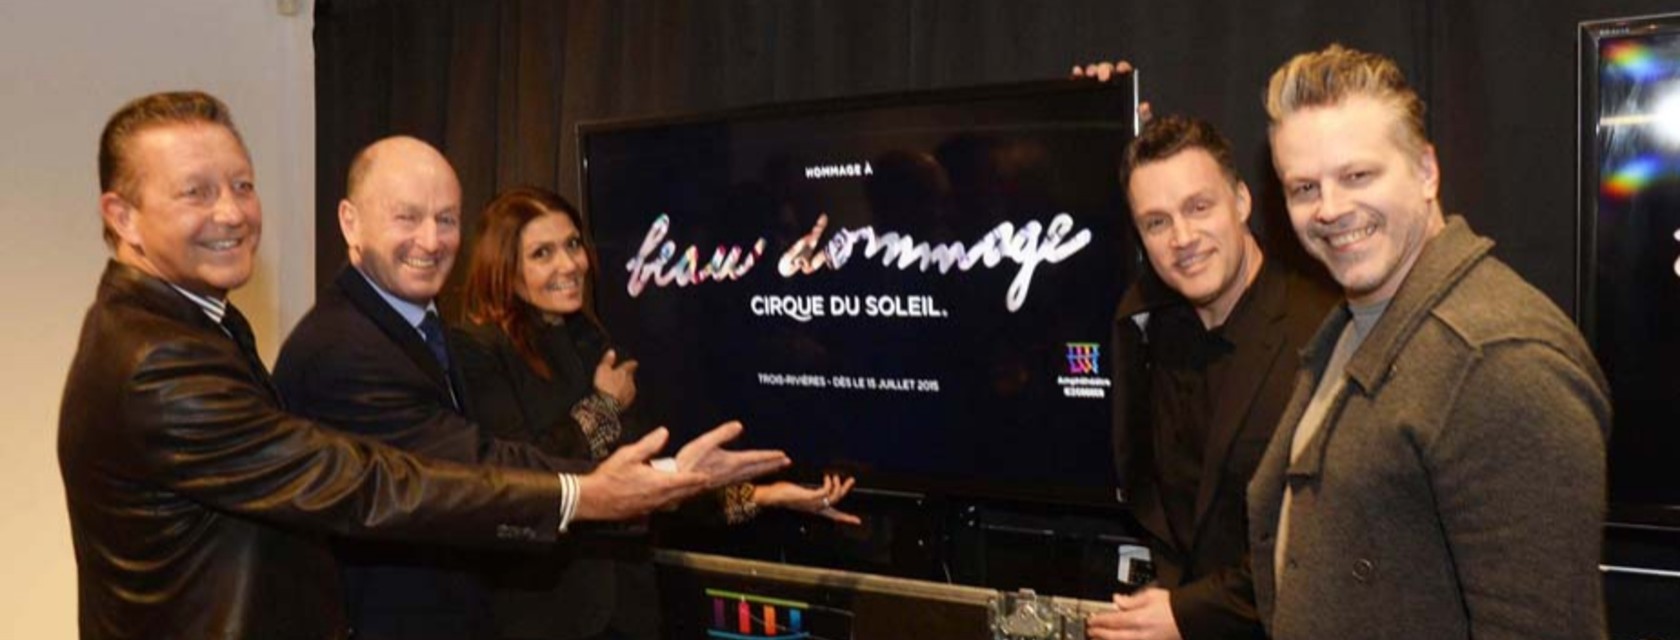 The Corporation de l’amphithéâtre de Trois-Rivières welcomes Cirque du Soleil this summer